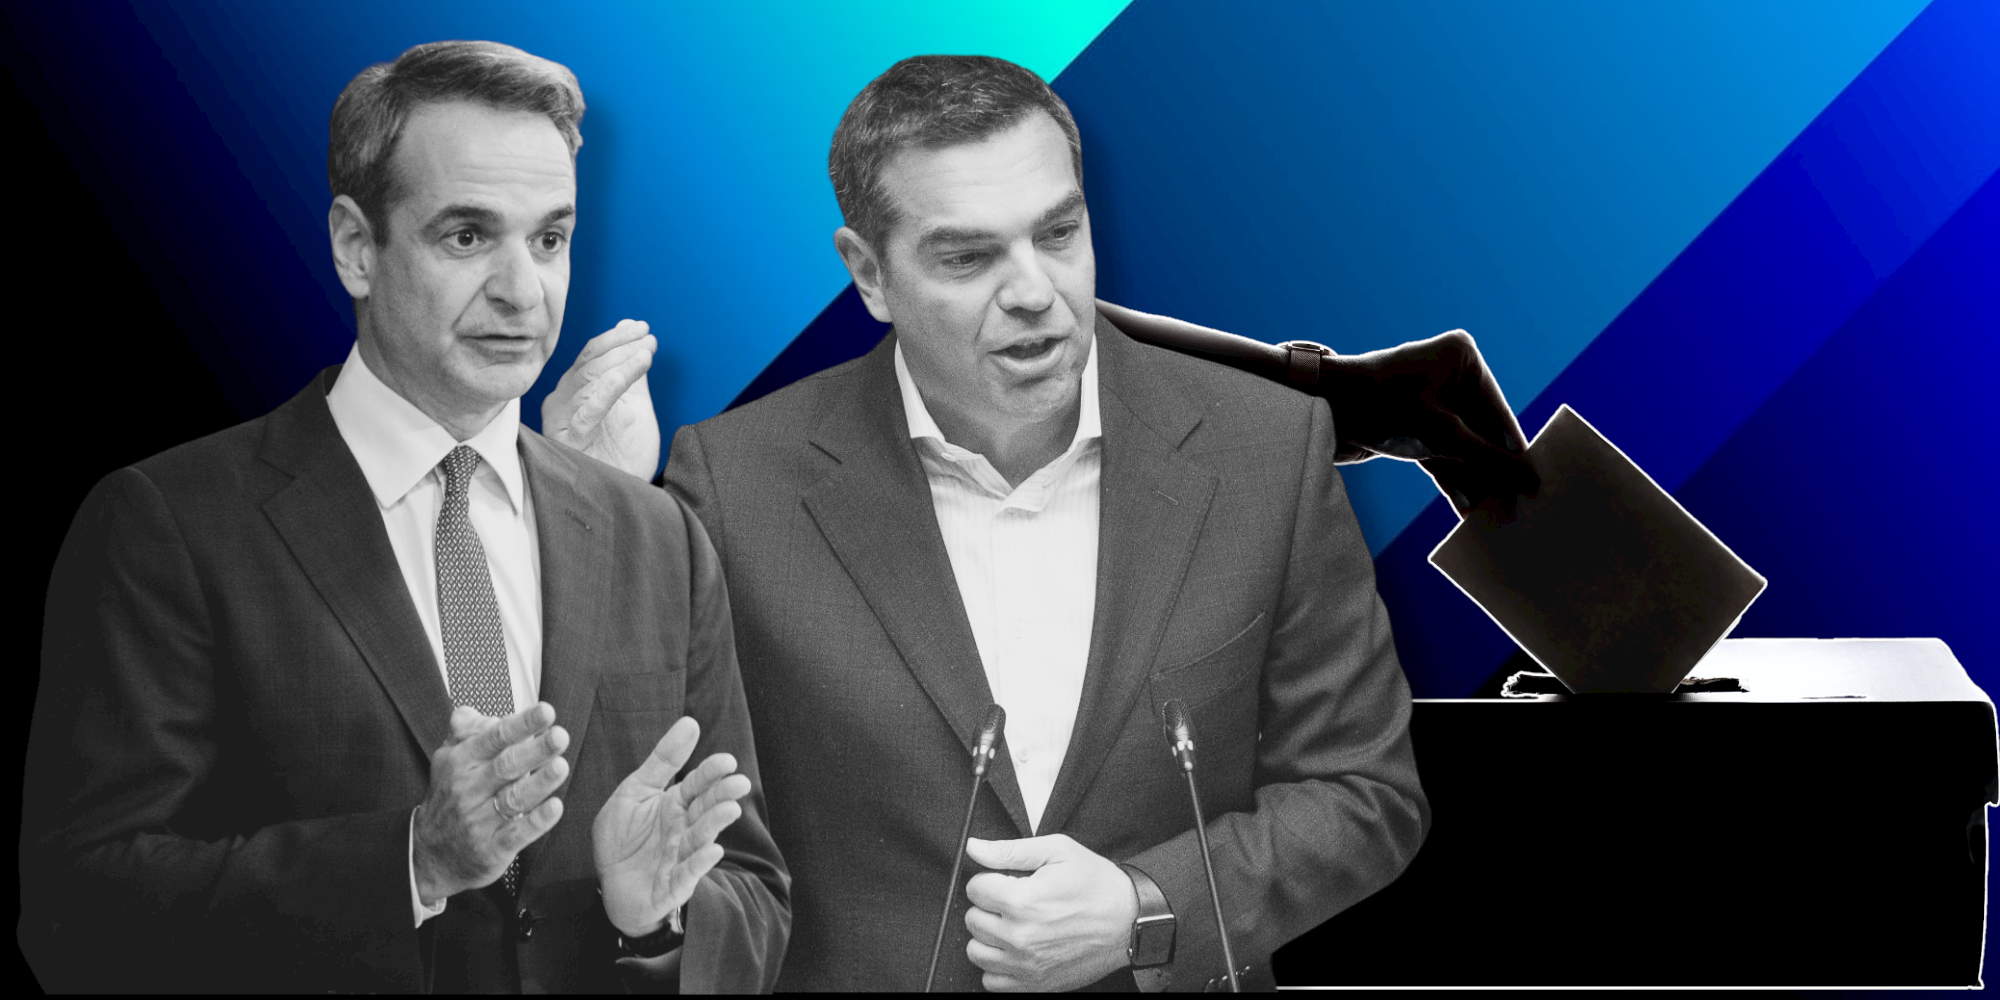 Κυριάκος Μητσοτάκης και Αλέξης Τσίπρας αναμετρώνται σε νέα δημοσκόπηση